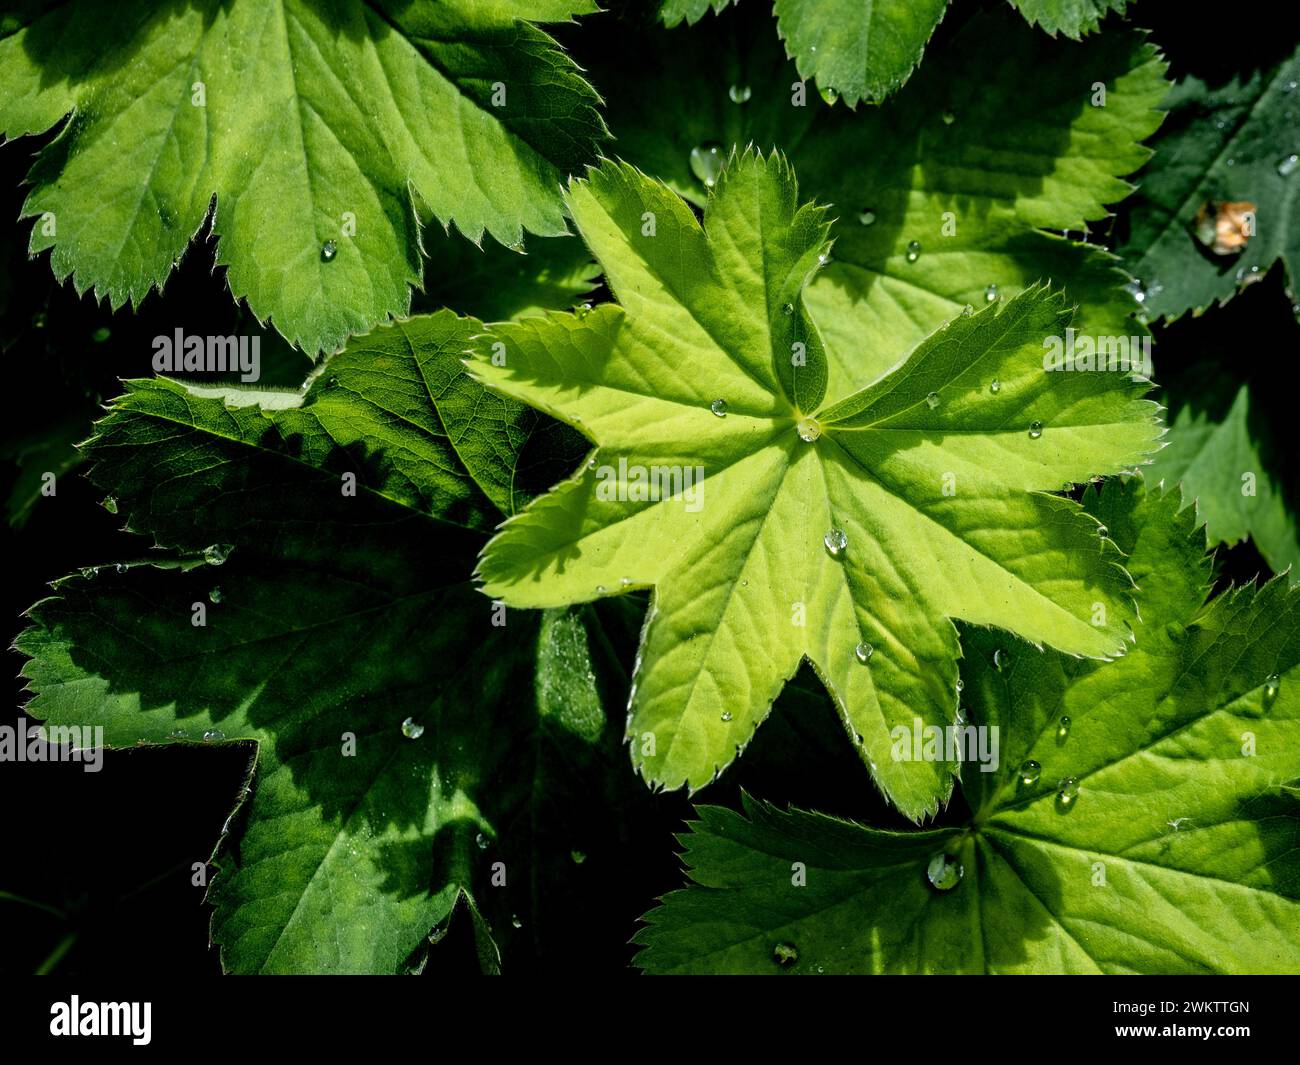 Diamond-like water droplets on the fan shaped leaves of Alchemilla Mollis. Stock Photo